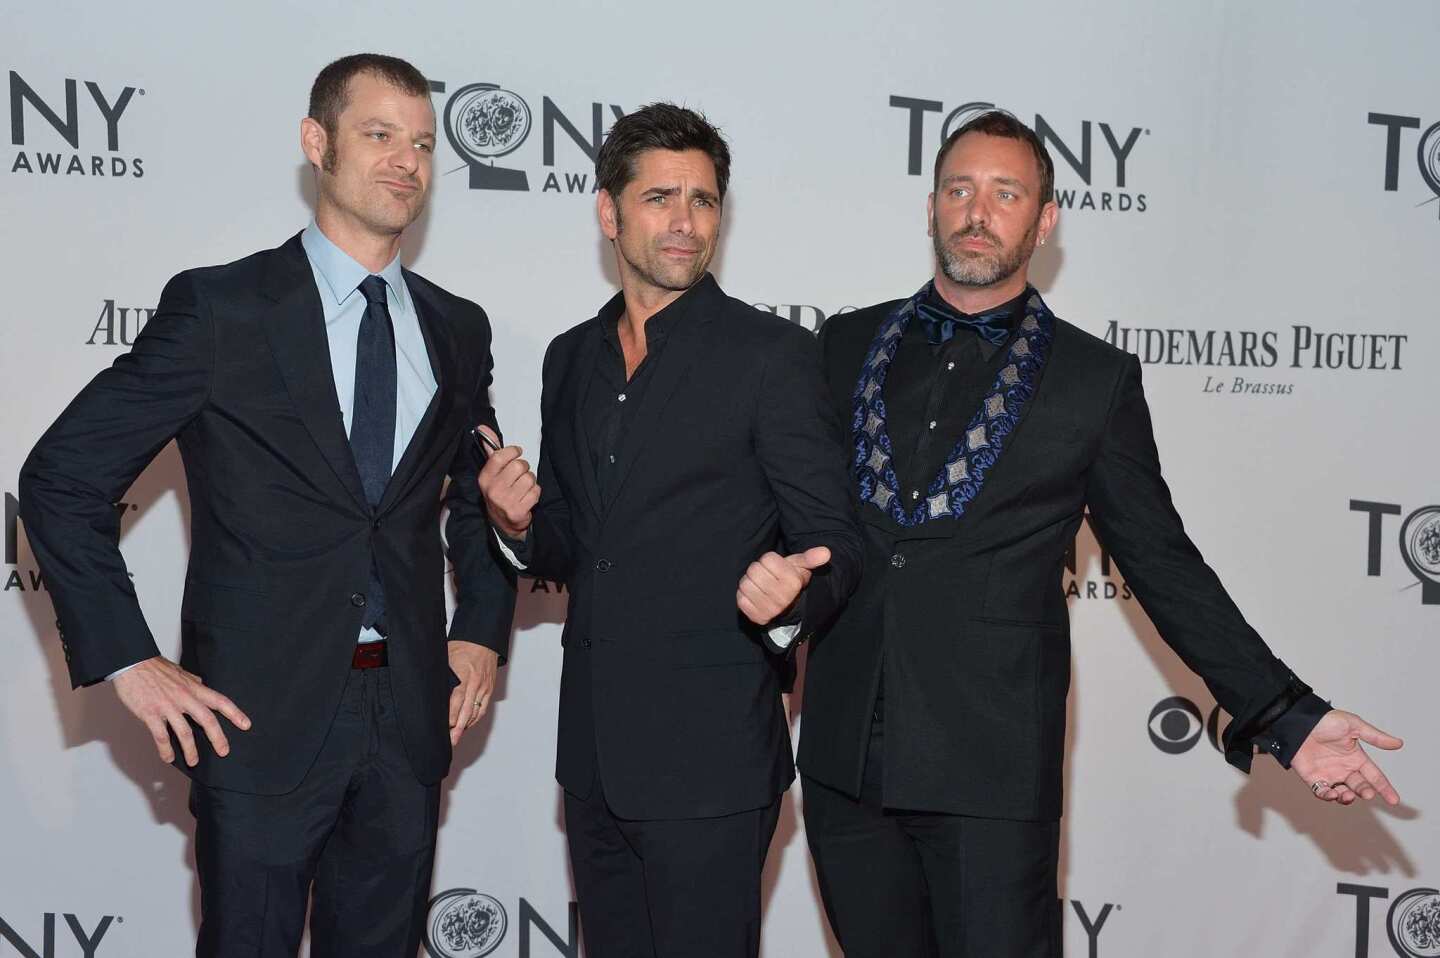 Tony Awards 2012